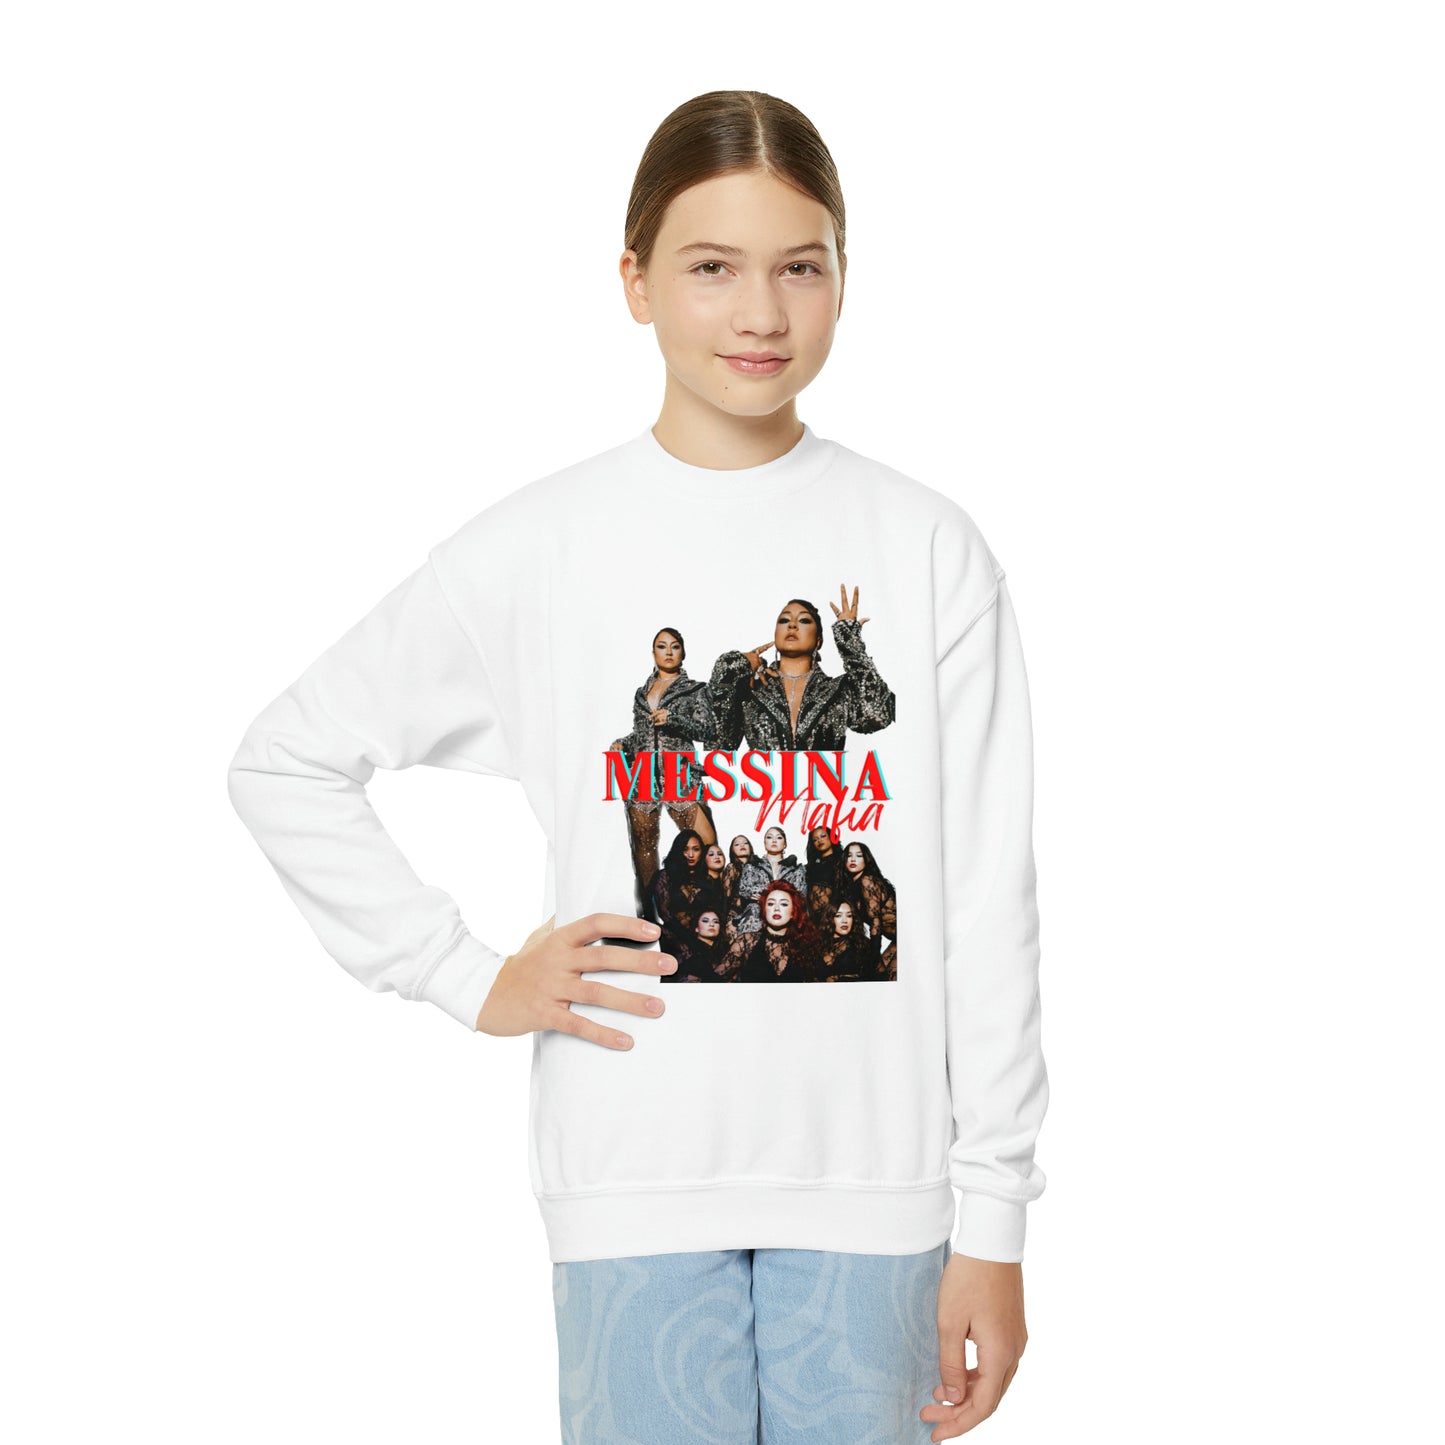 "Messina Mafia, Family is Everything" Youth Crewneck Sweatshirt